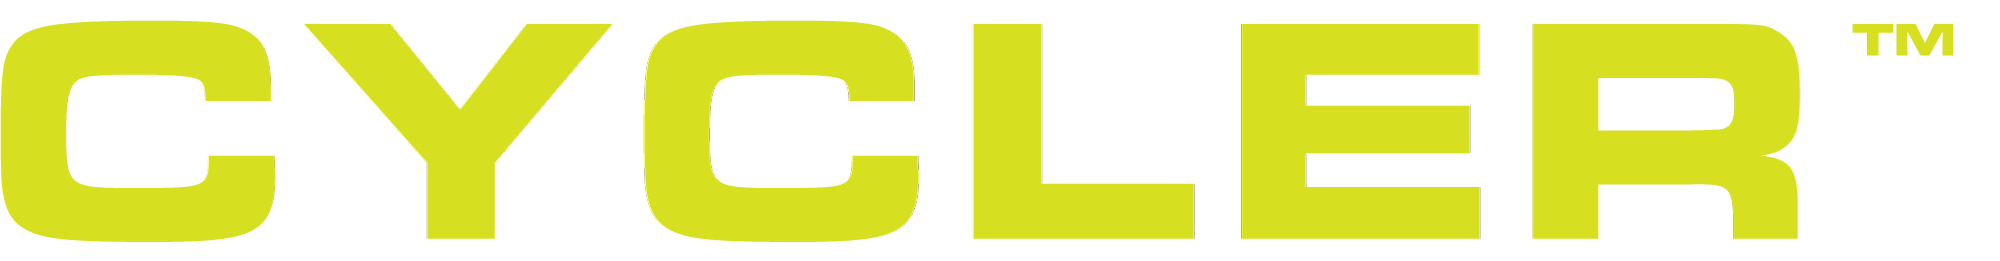 Cycler-logo-type-yellow-web.png